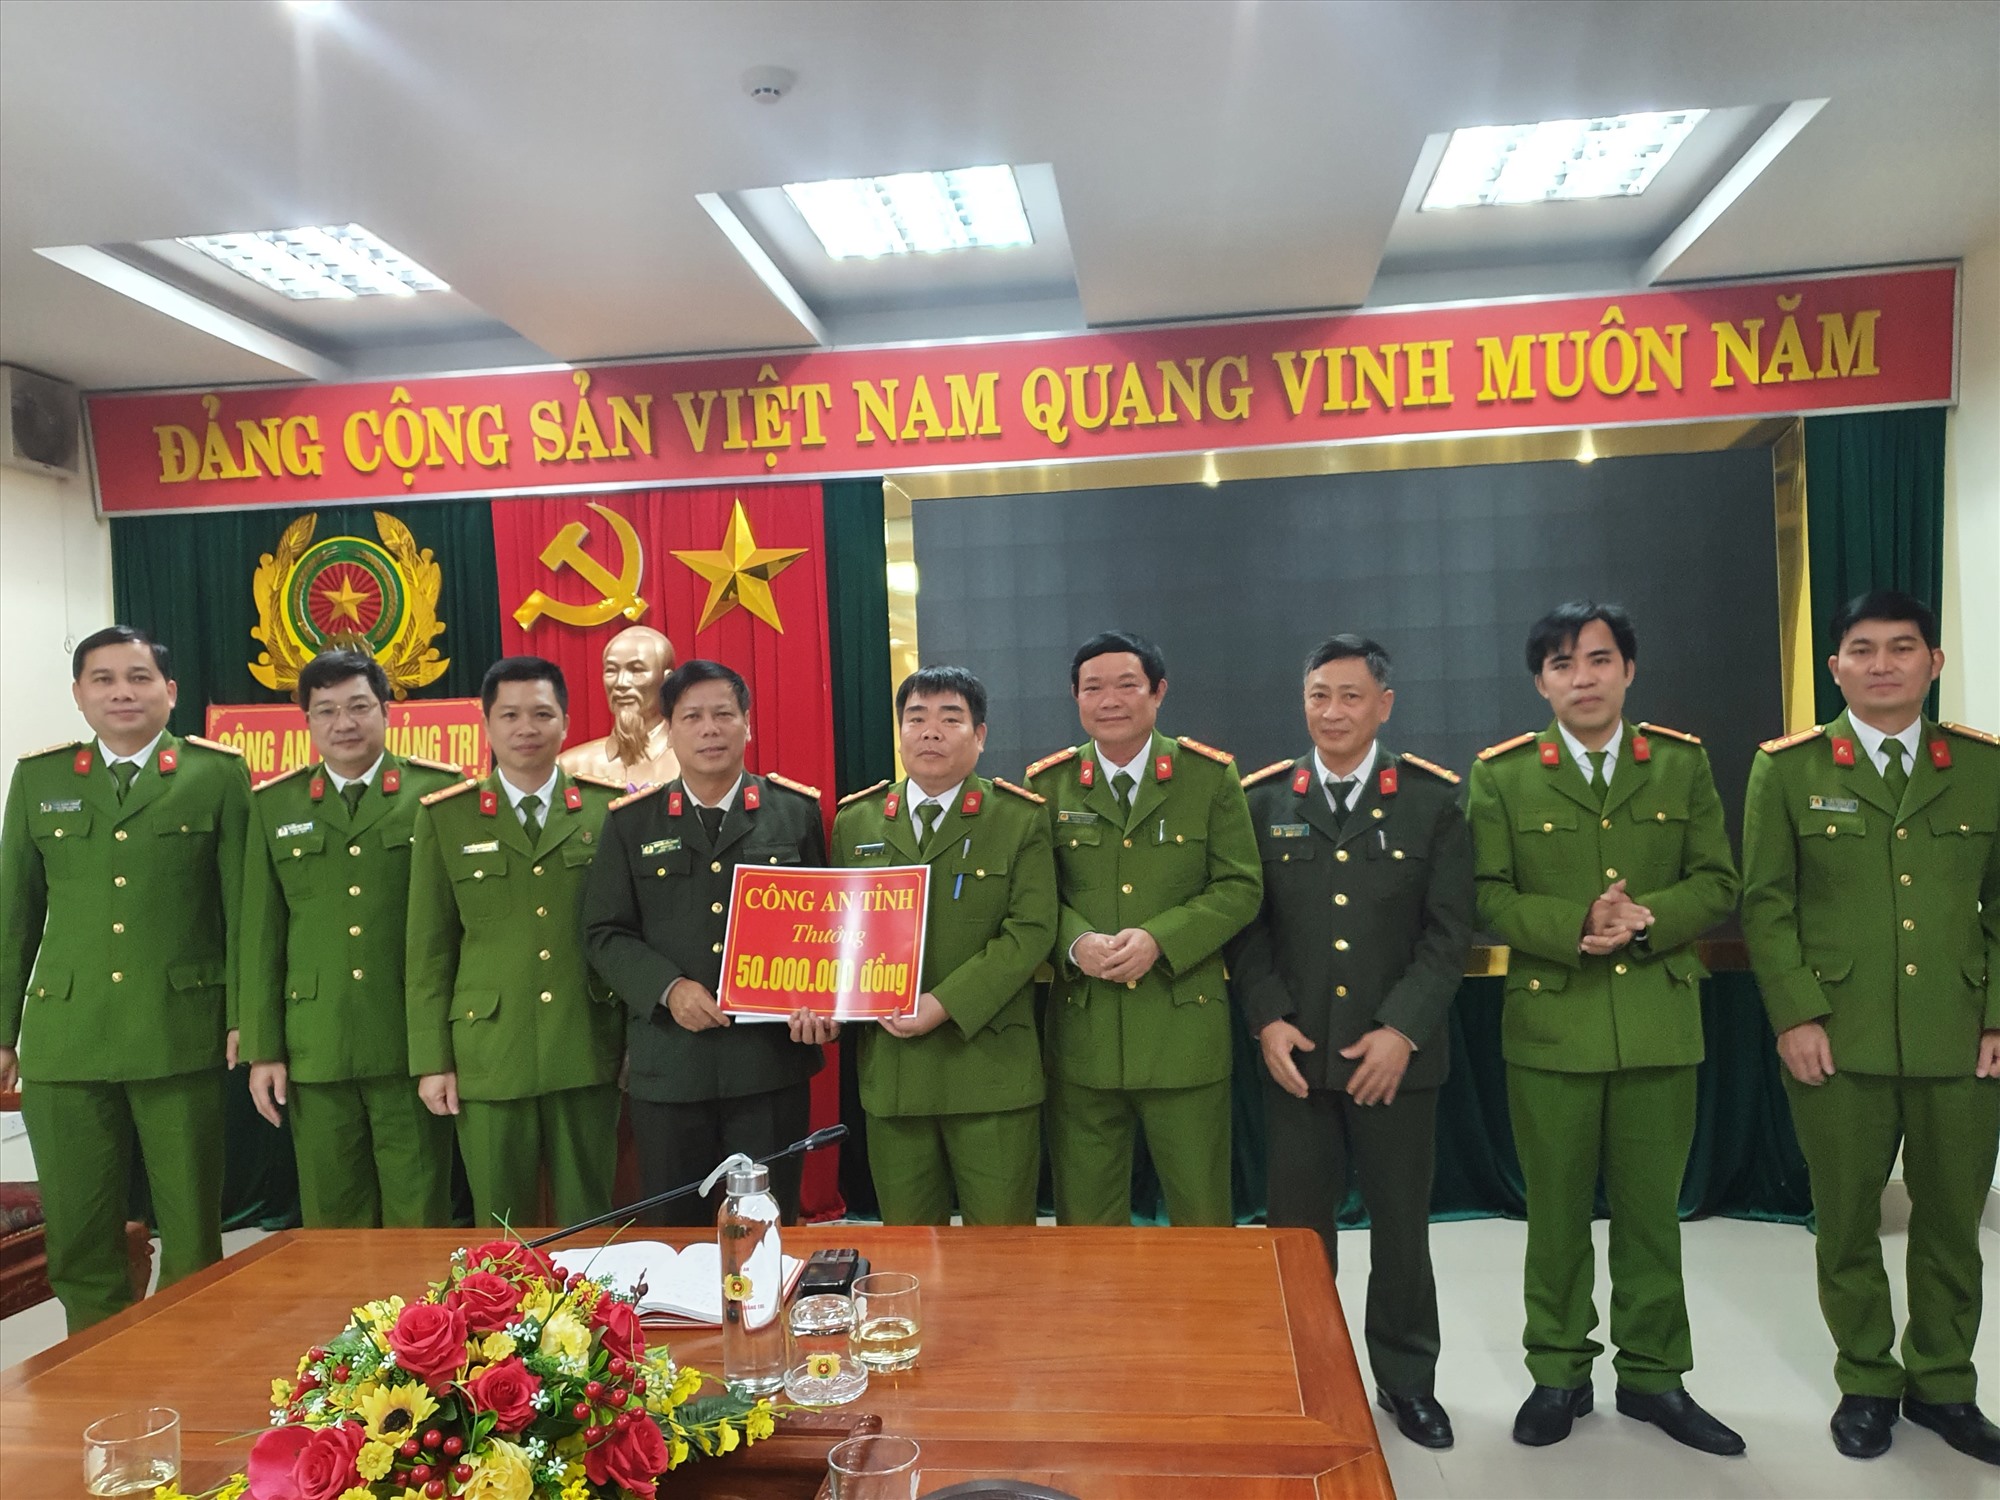 Giám đốc Công an tỉnh, Đại tá Nguyễn Văn Thanh trao thưởng cho ban chuyên án - Ảnh: Anh Tuấn